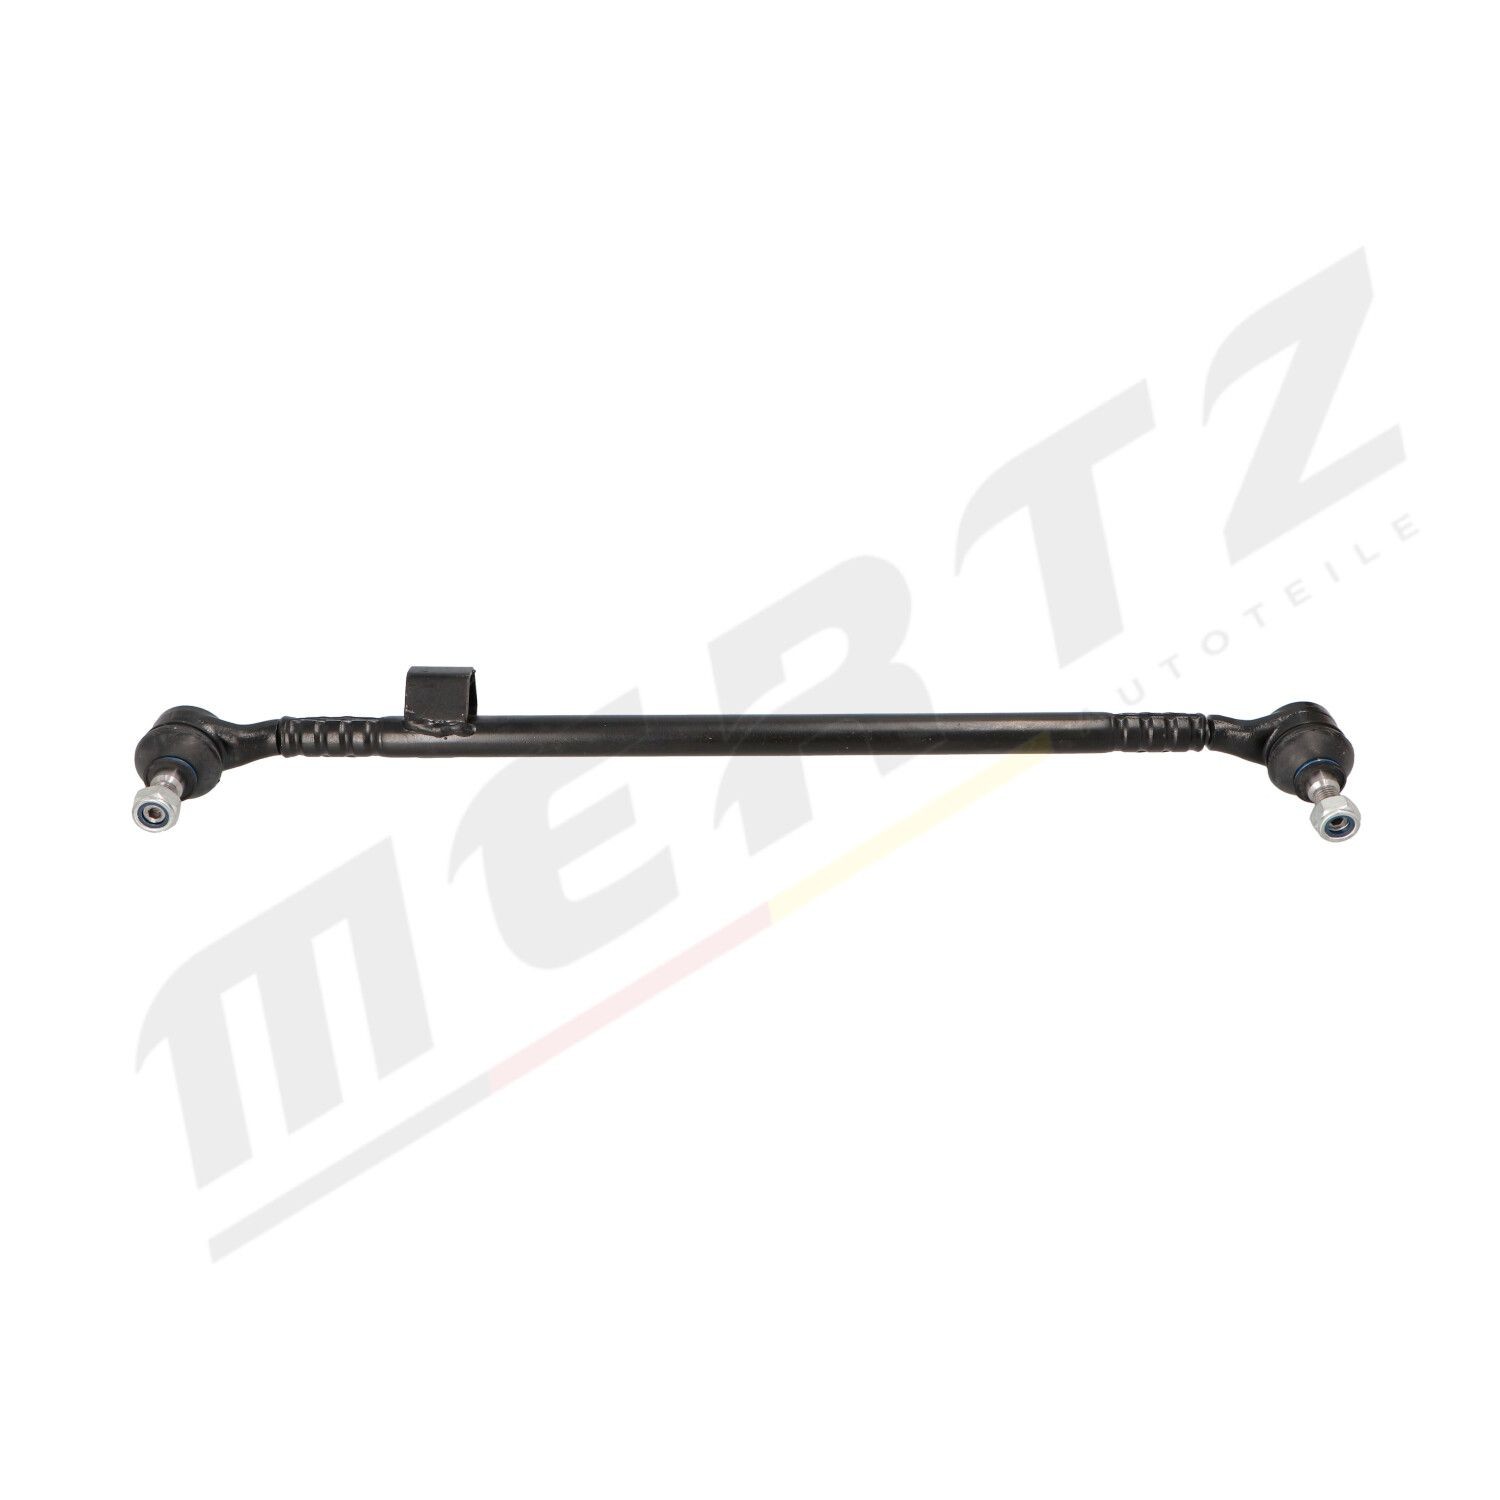 MERTZ M-S1065 Rod Assembly 124 460 12 05